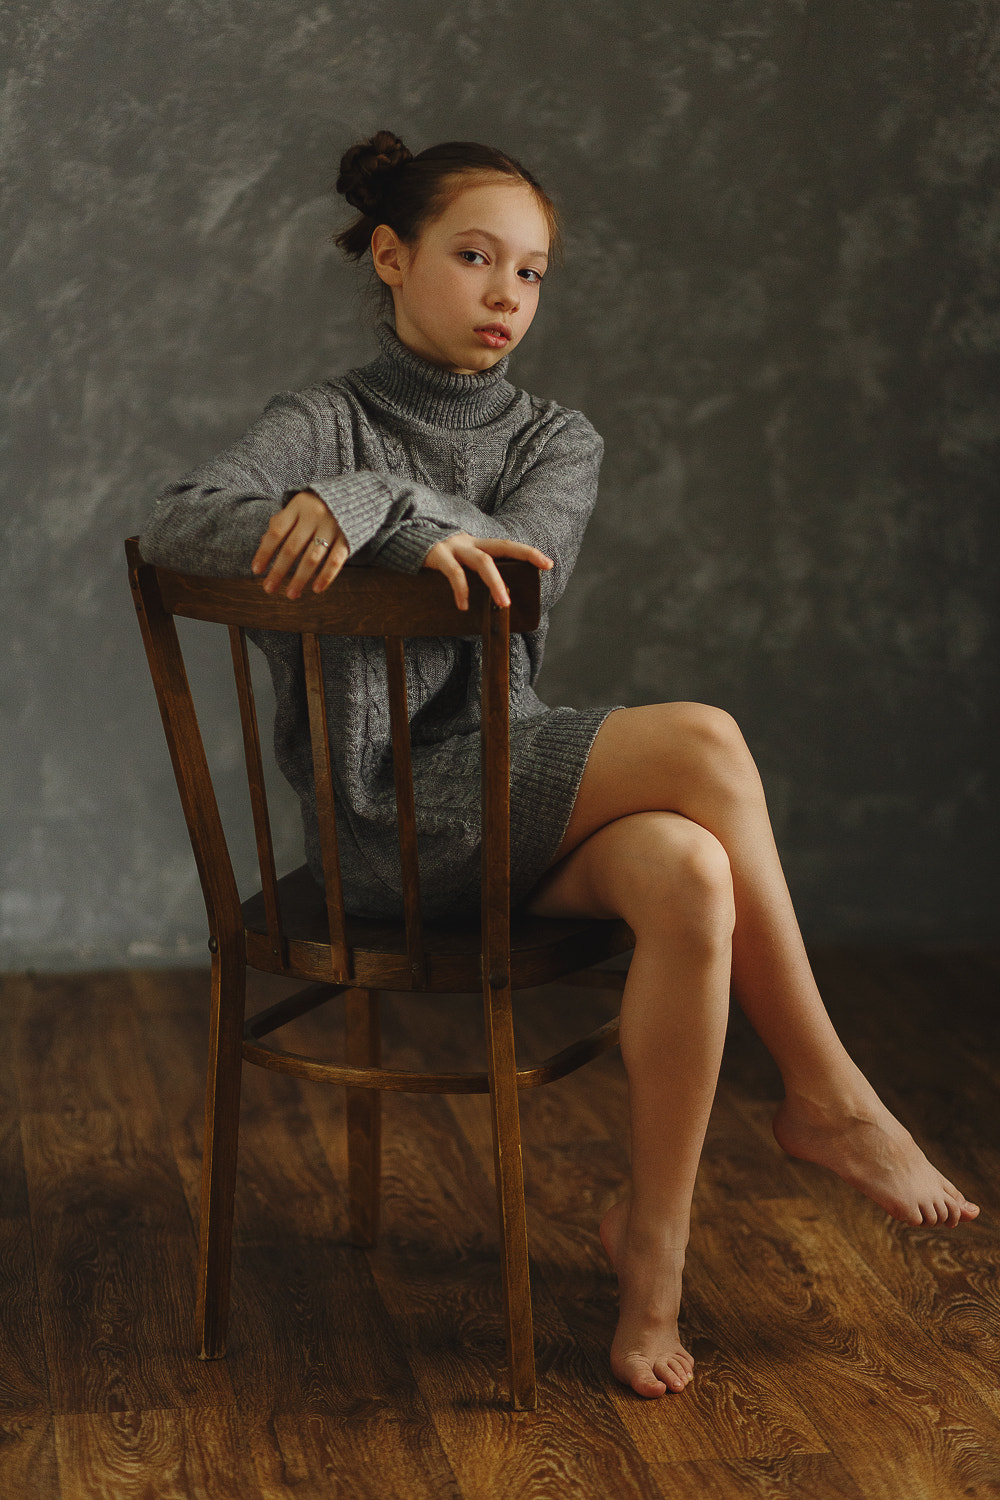 Anton Zhilin Hairbun Sweater Barefoot Chair Women Portrait Display Sitting Legs Crossed Floor Indoor 1000x1500